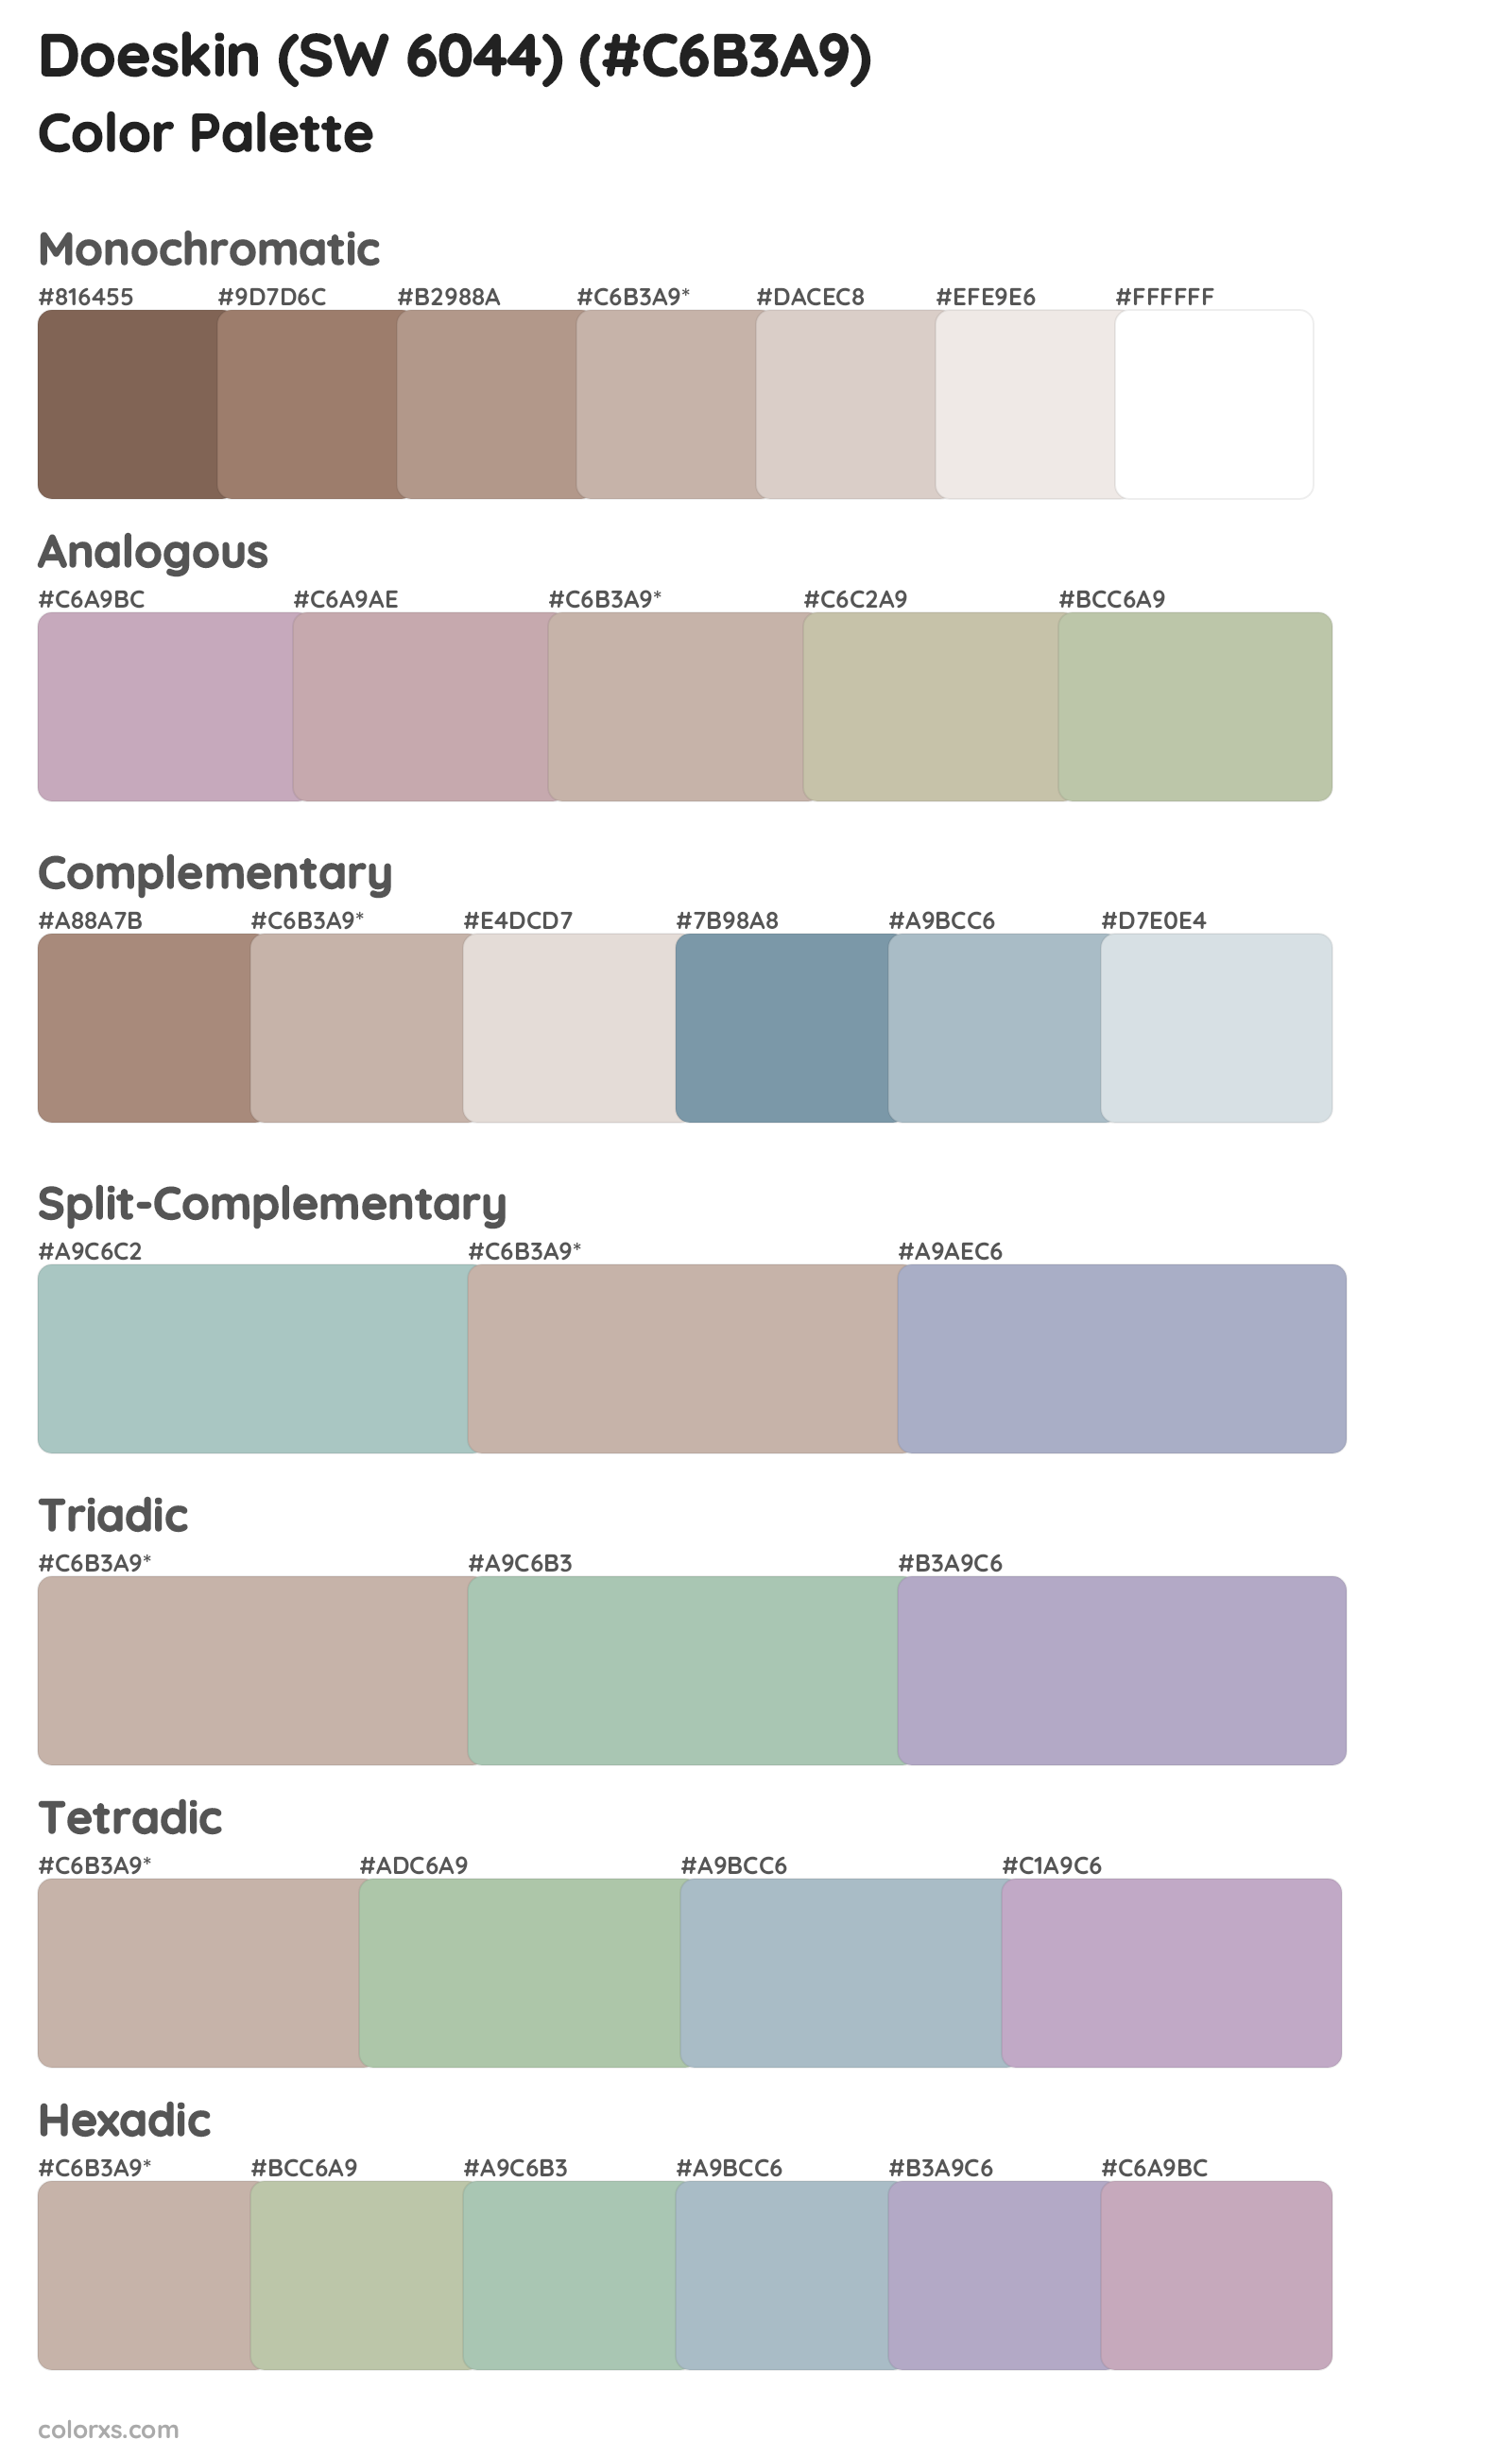 Doeskin (SW 6044) Color Scheme Palettes